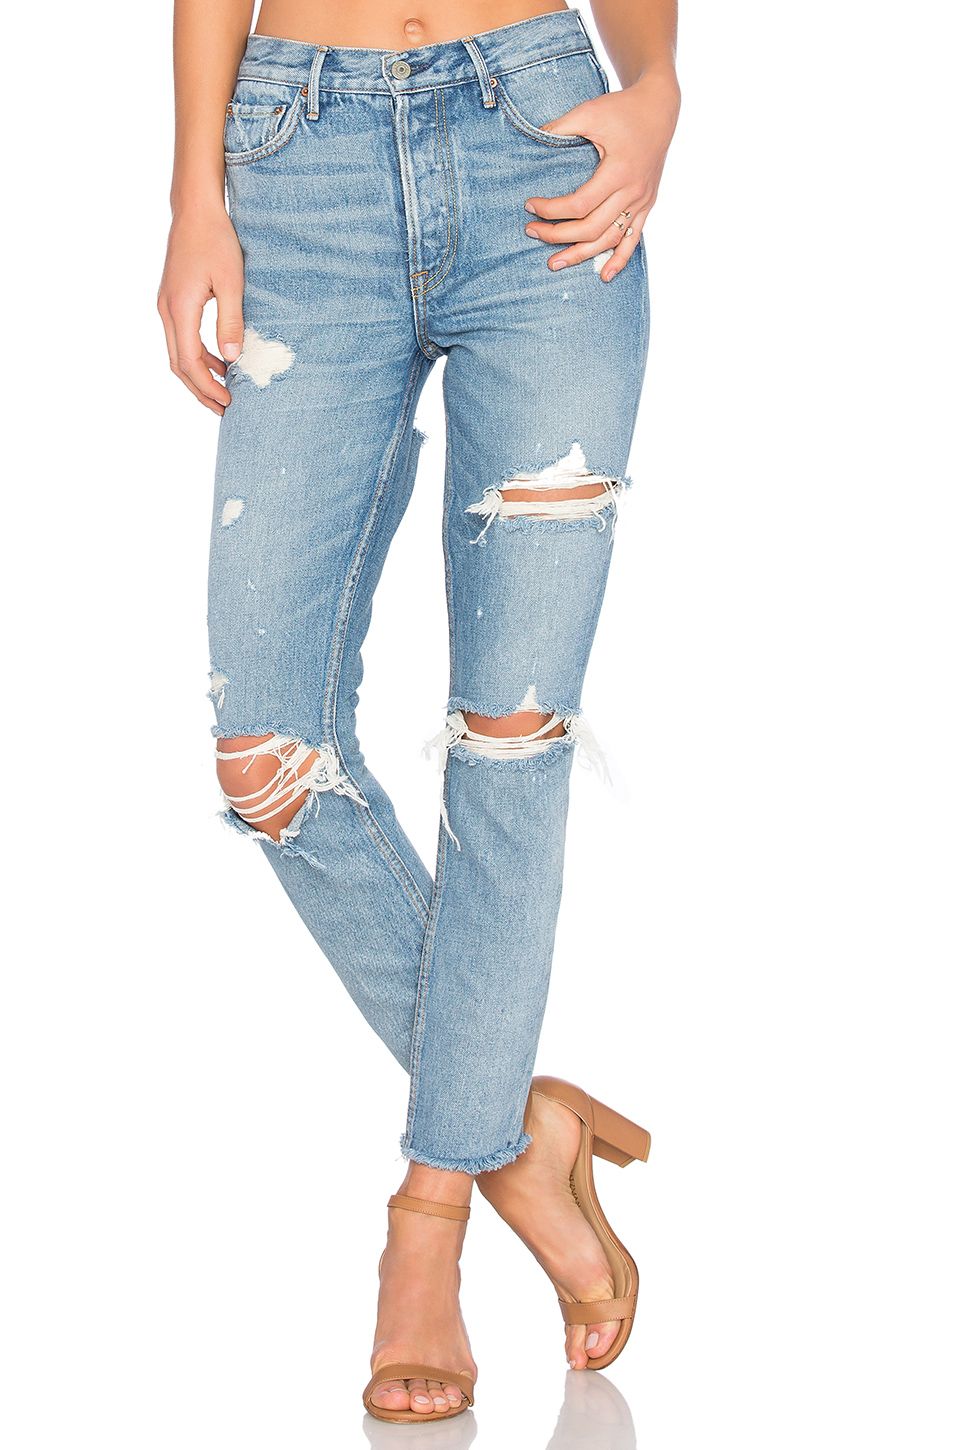 Εδώ είναι πώς να αποκτήσετε το Ripped Jeans της Kylie